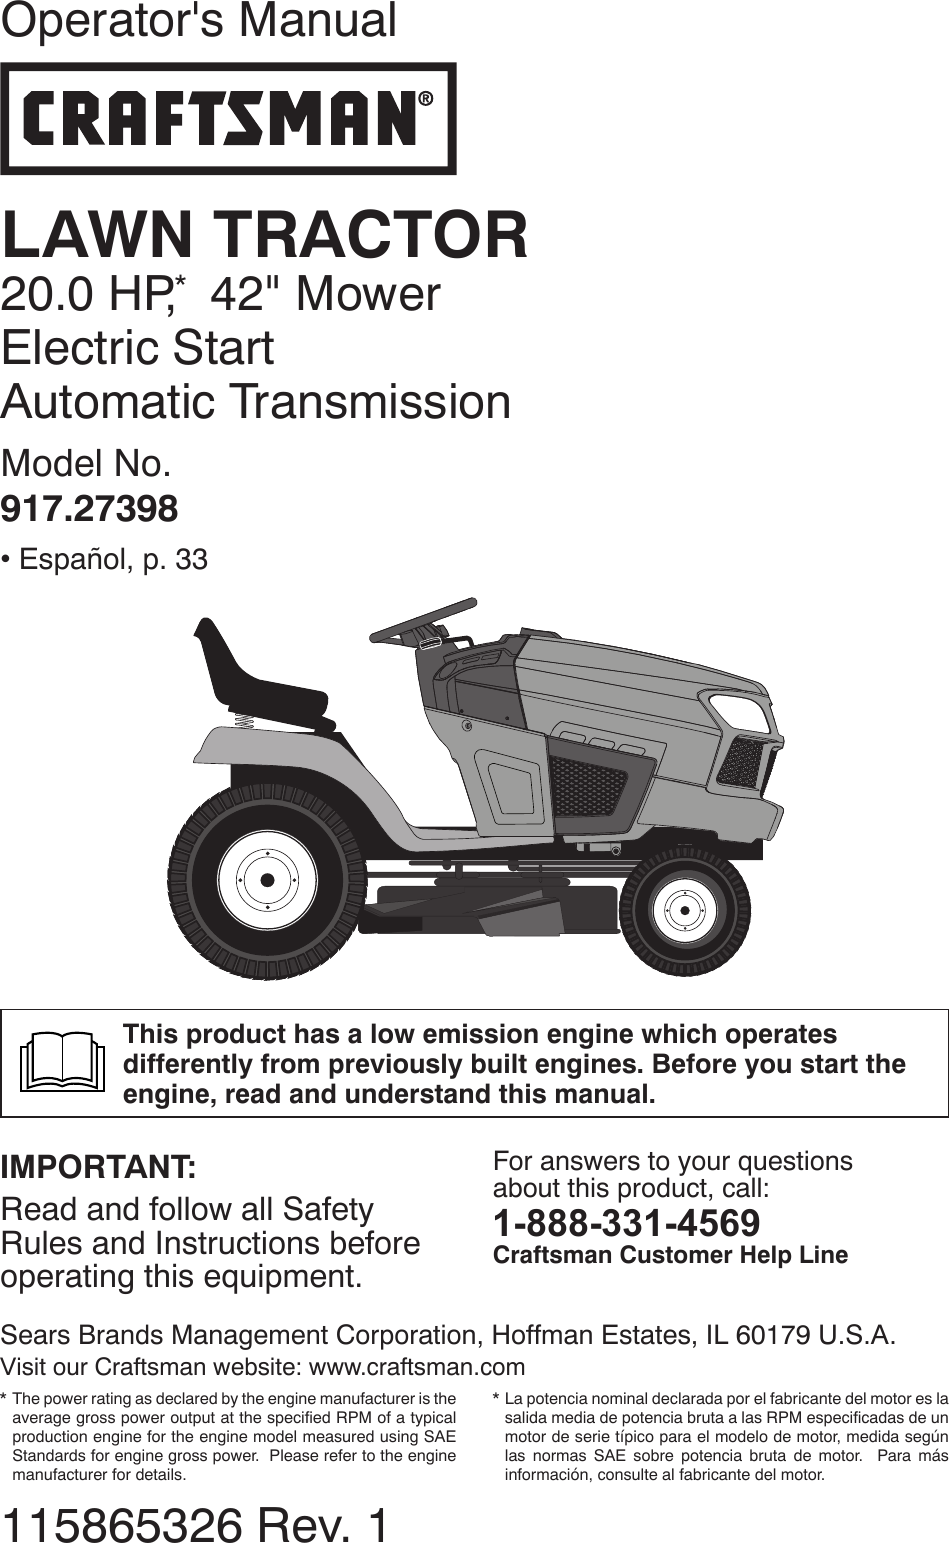 Craftsman Lawn Tractor Repair Manual